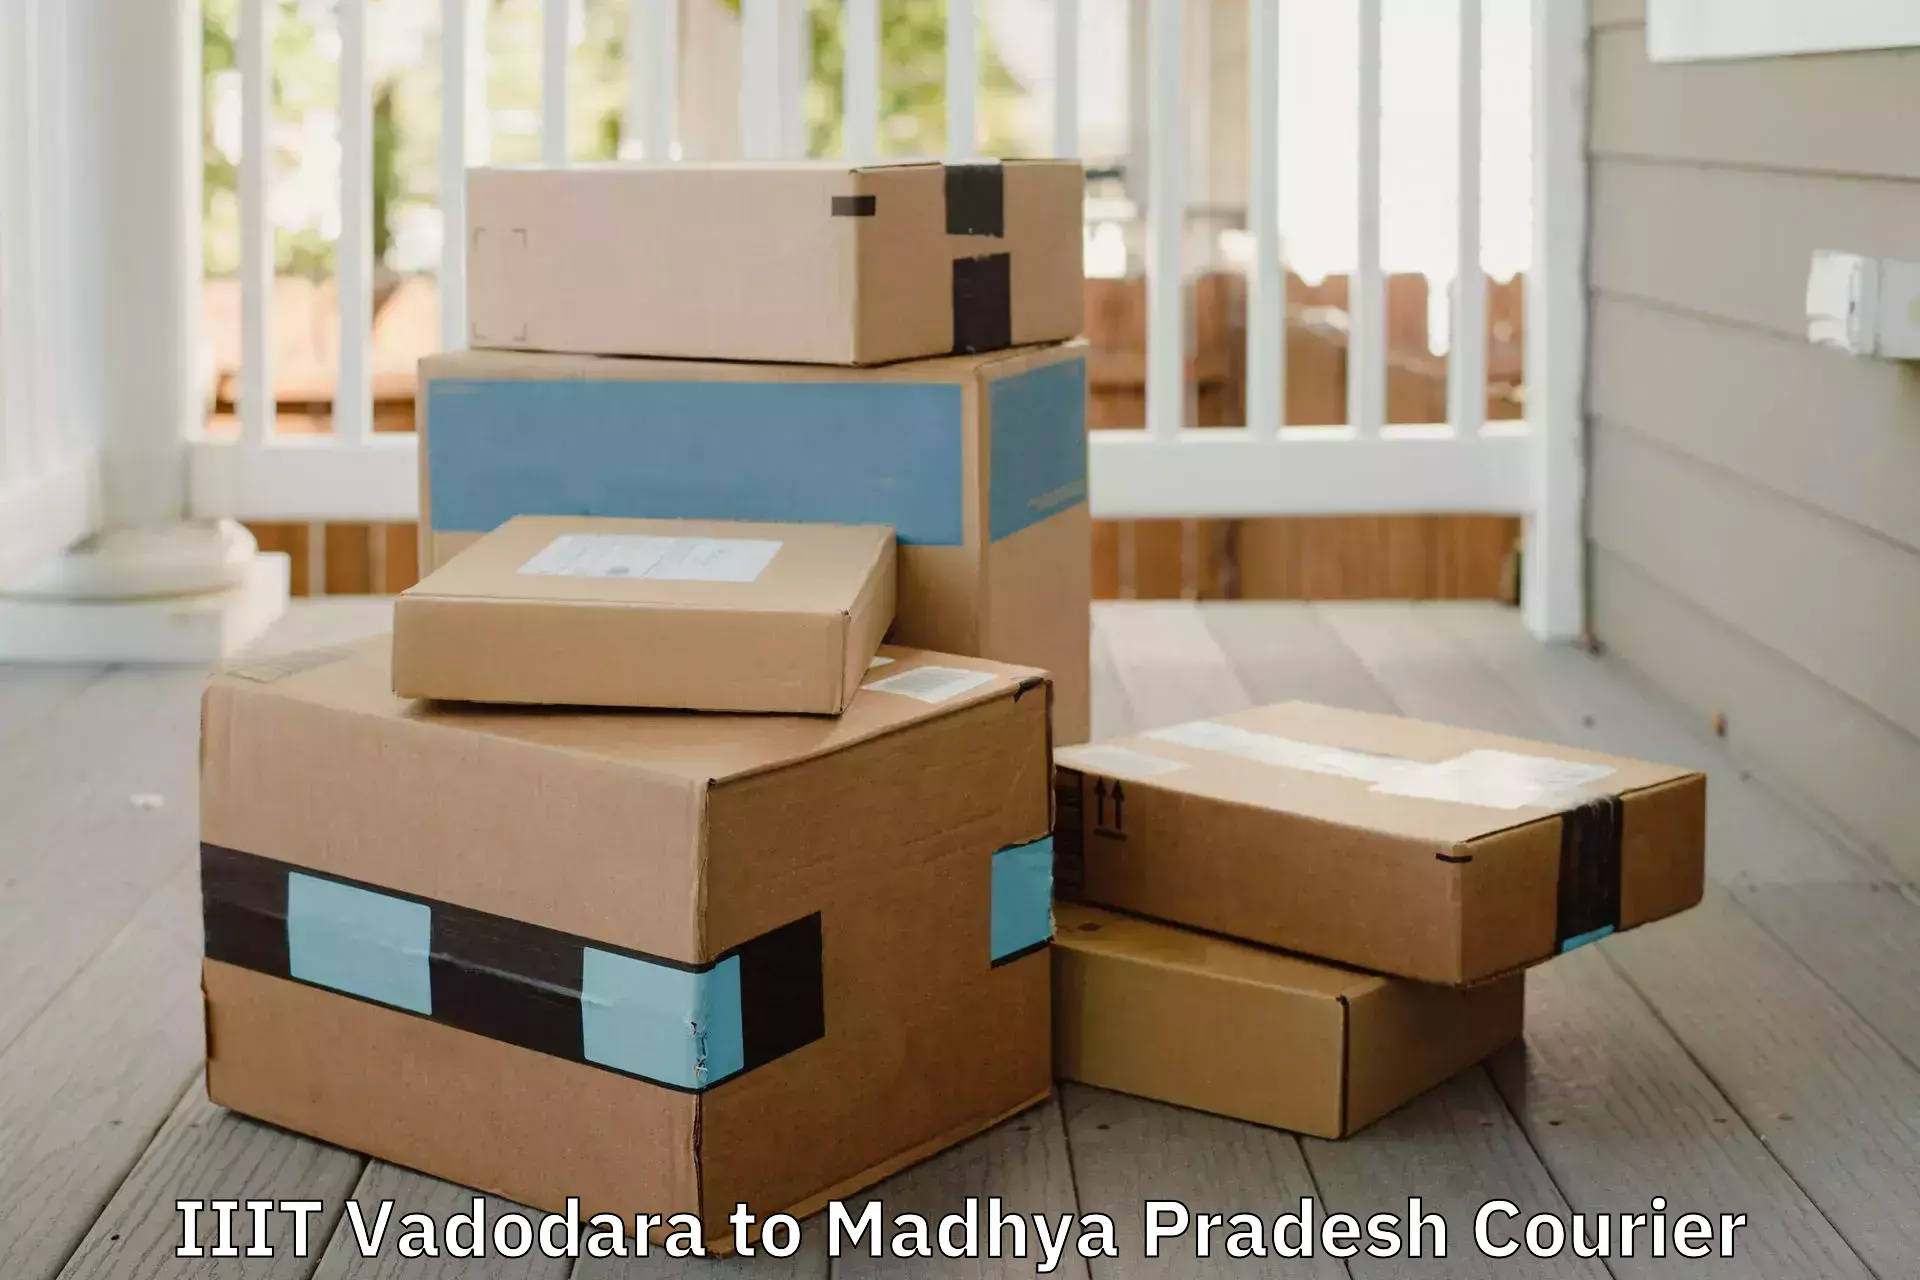 Furniture moving service IIIT Vadodara to Madhya Pradesh